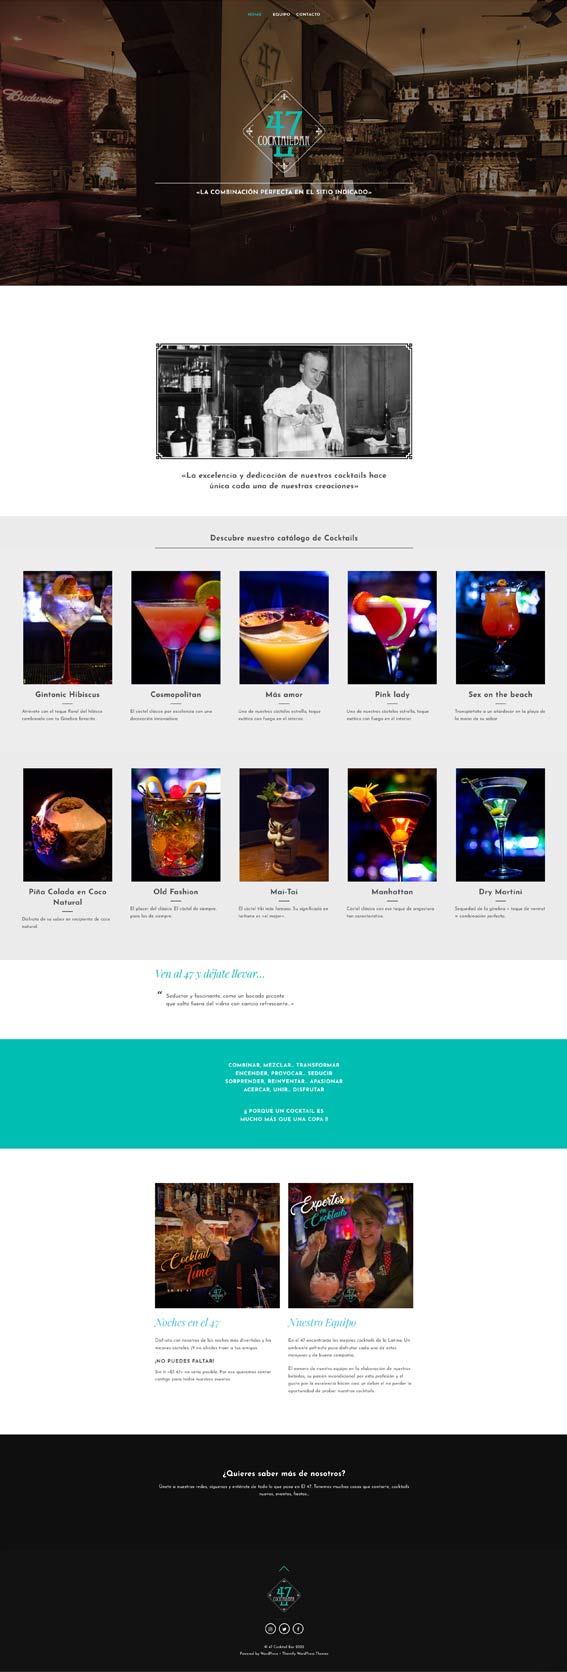 Grupo Dream: Diseño al completo de la web diseñada para el 47 cocktail bar